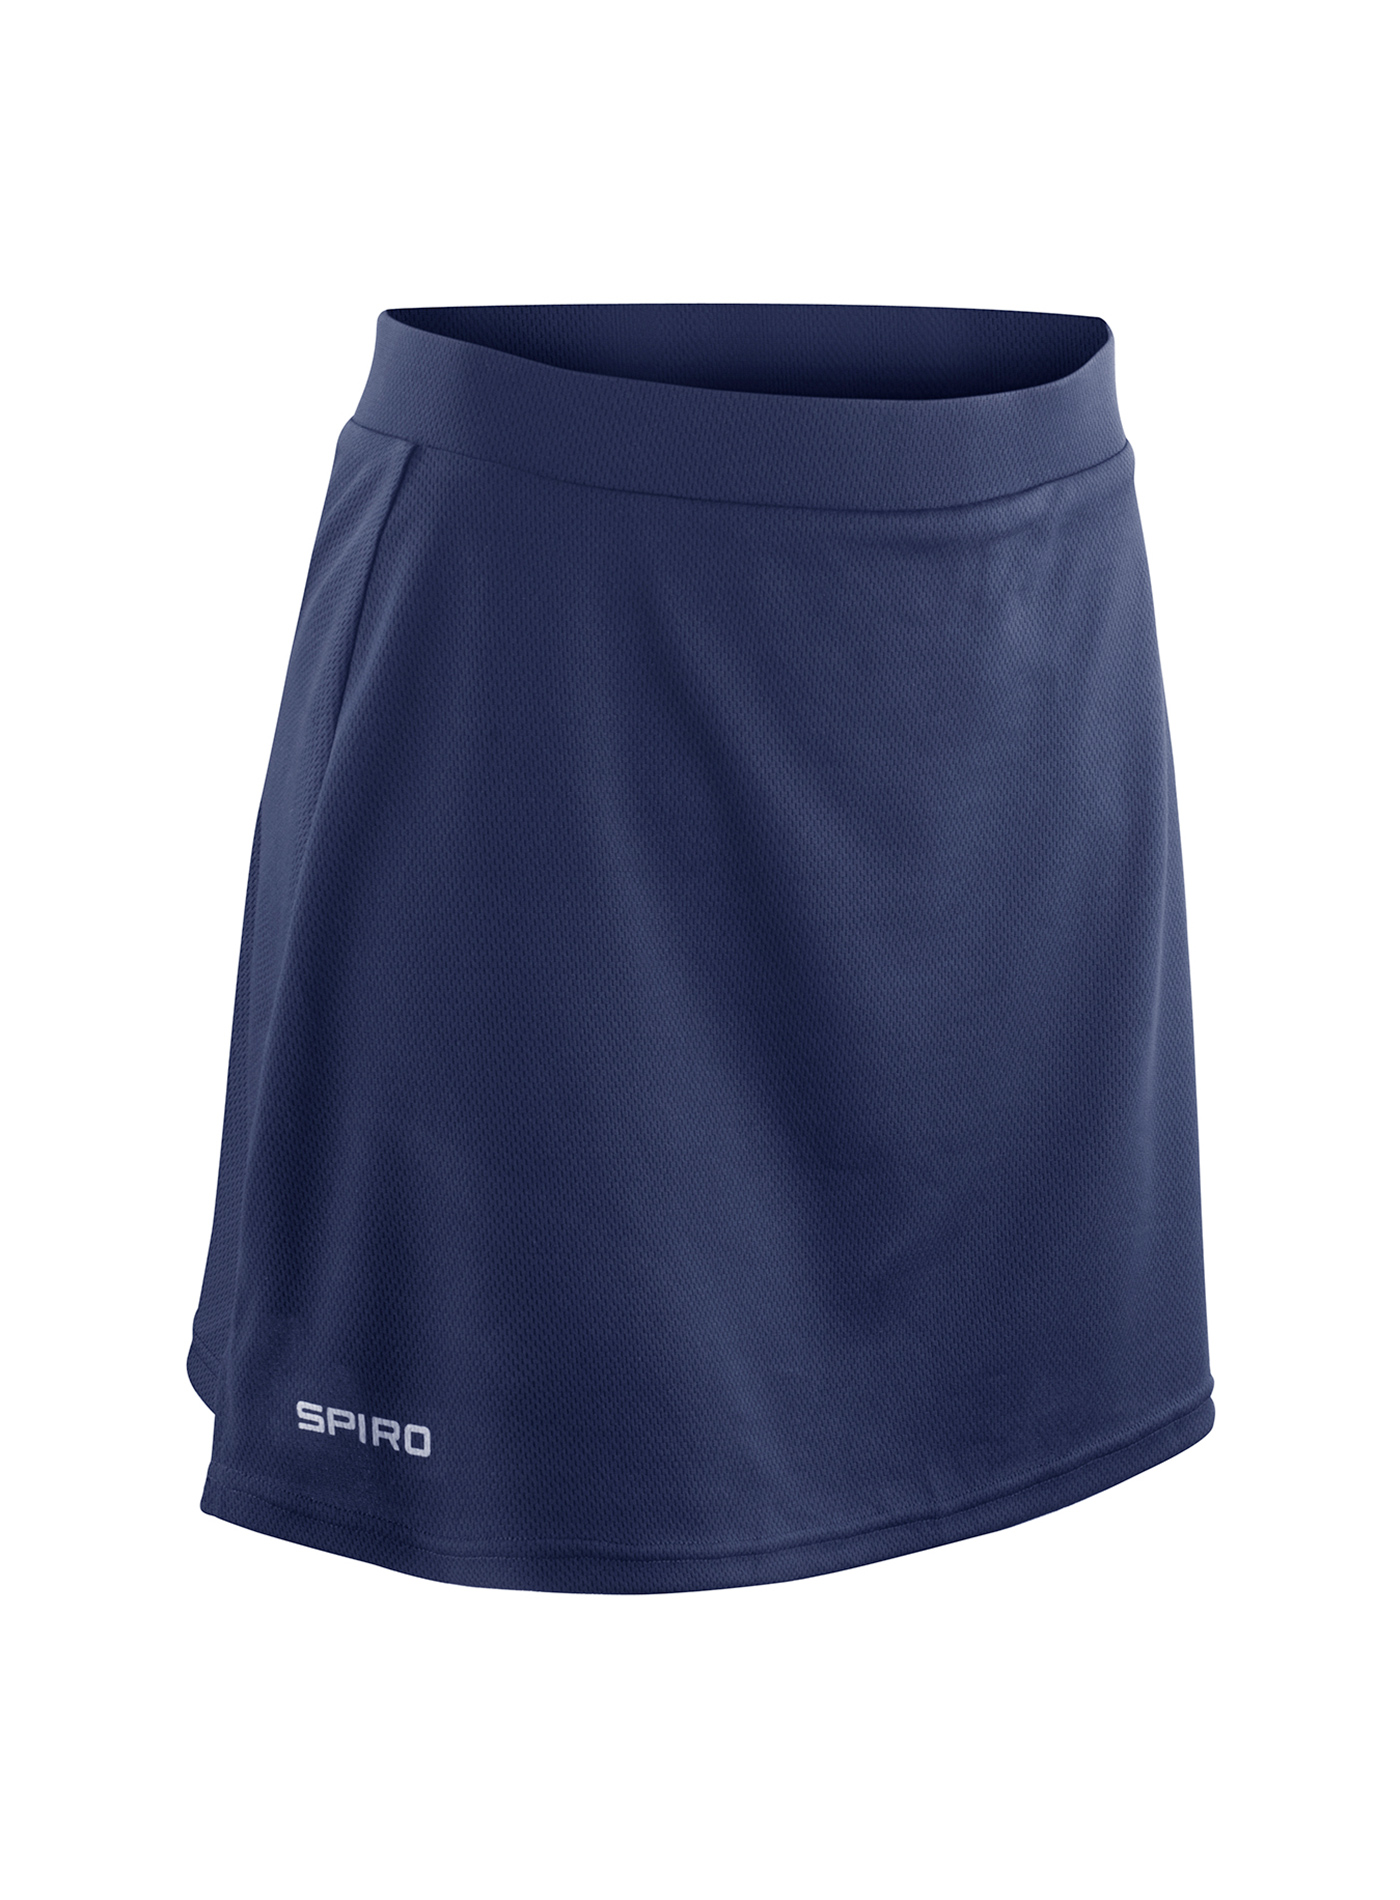 Dámská sportovní sukně s integrovanými šortkami - Cobalt blue/Navy S